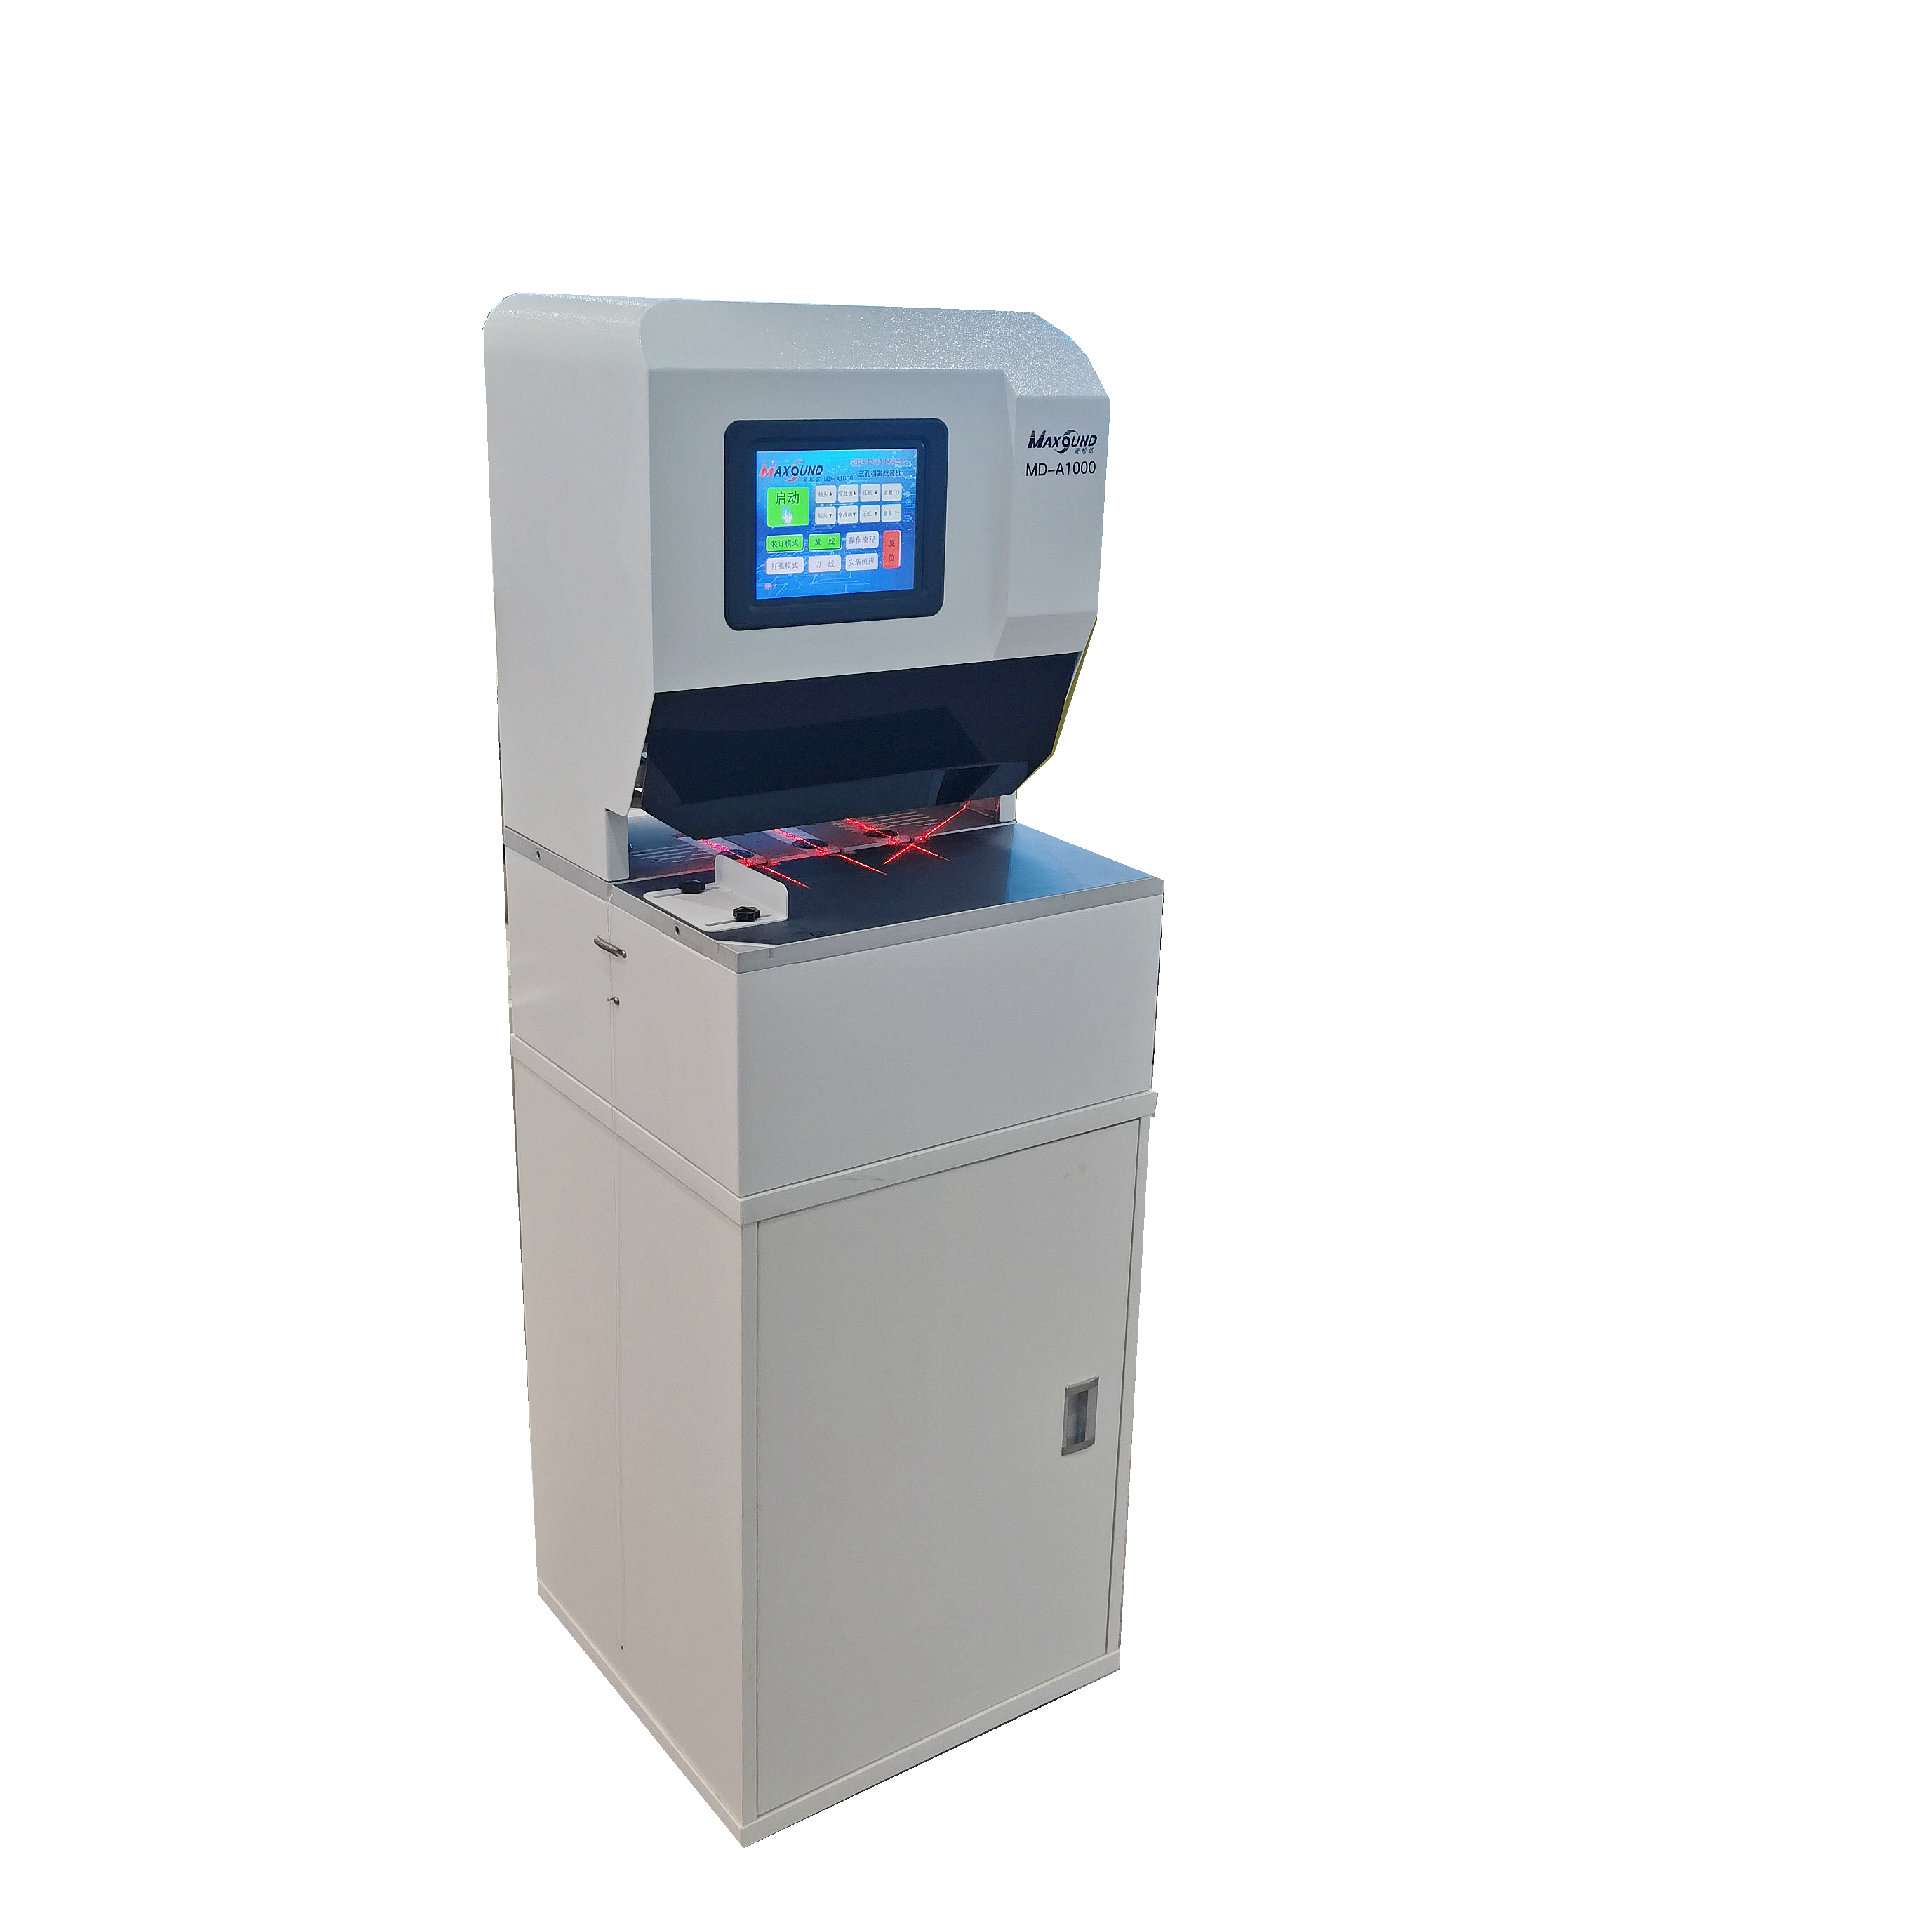 智能档案装订机(带抖纸功能）MD-A1000